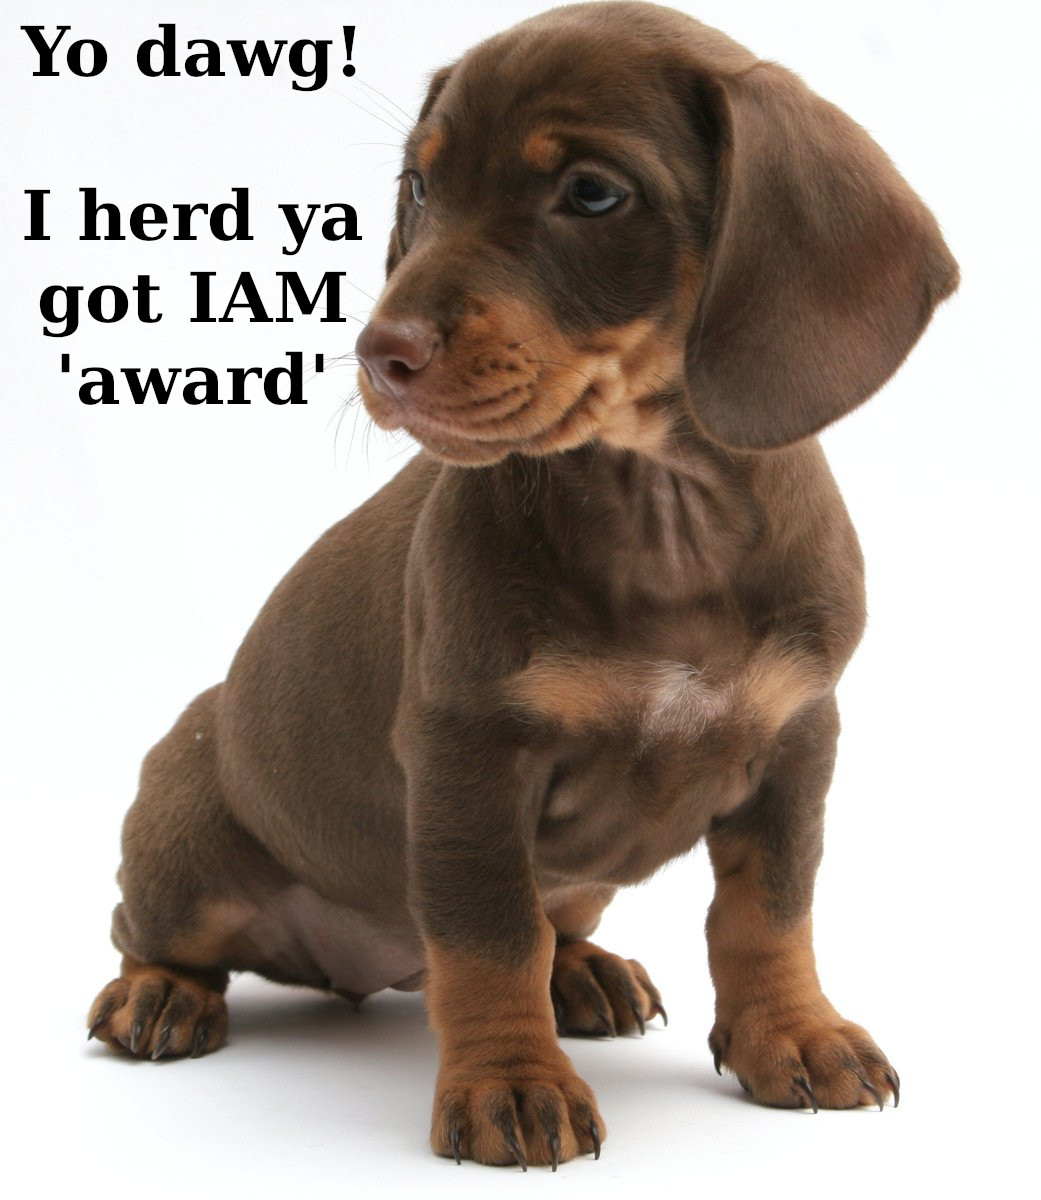 Young dachshund: Yo dawg! I herd ya got IAM 'award'